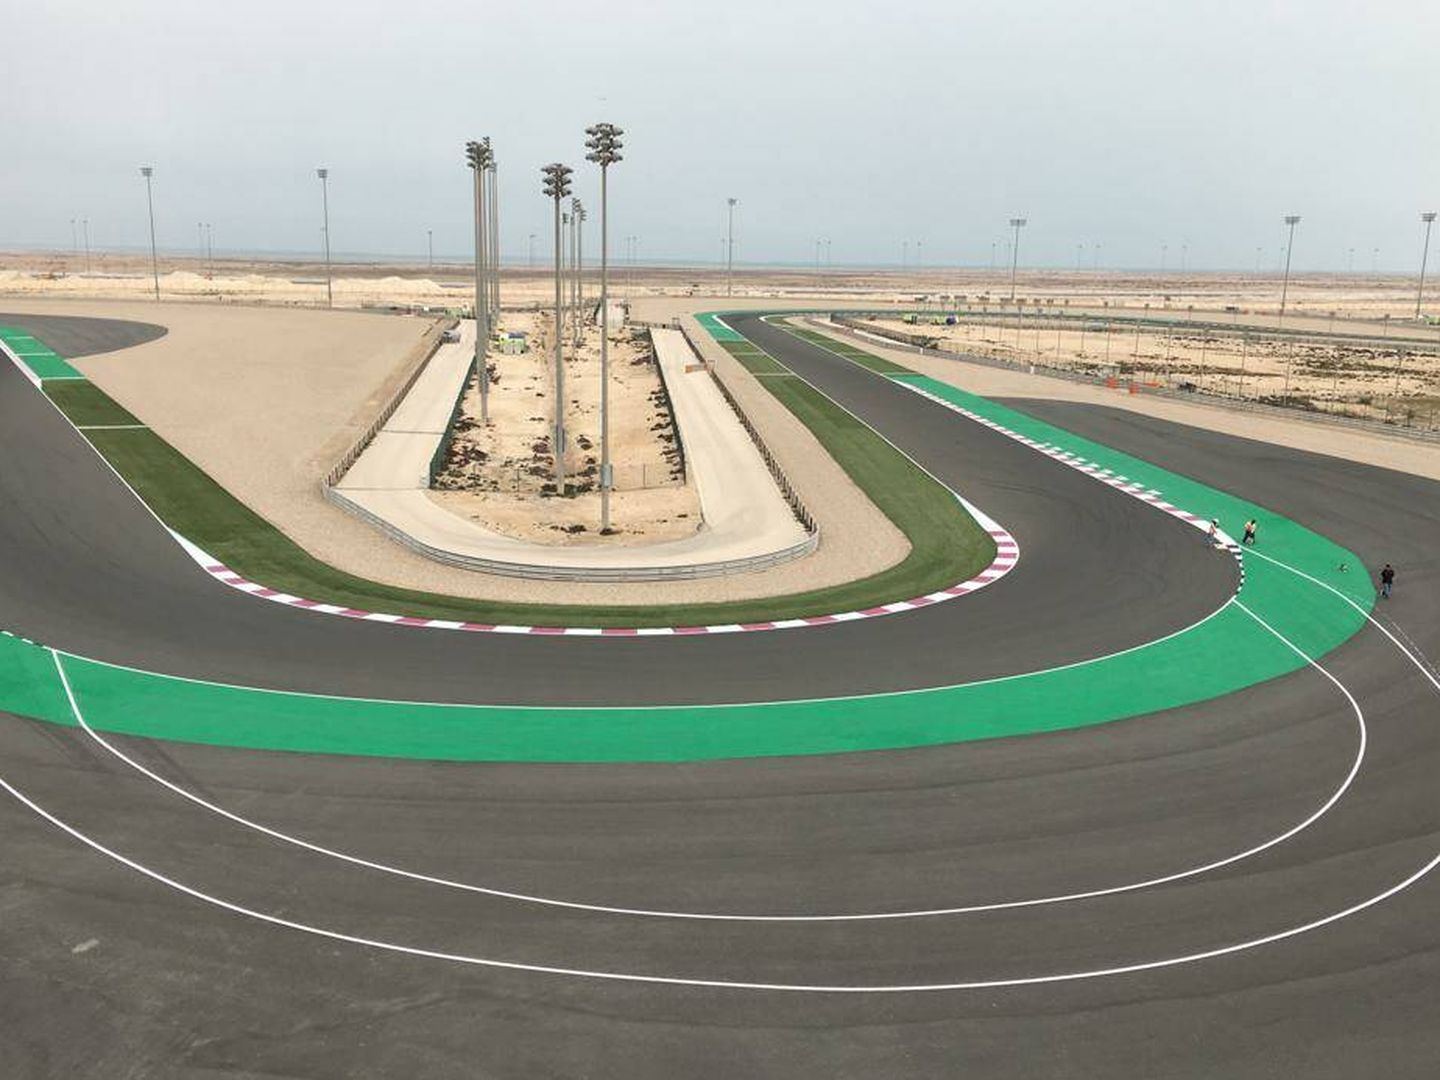 El circuito de Losail en Qatar fue el primero en incorporar el trazado alternativo 'long lap'